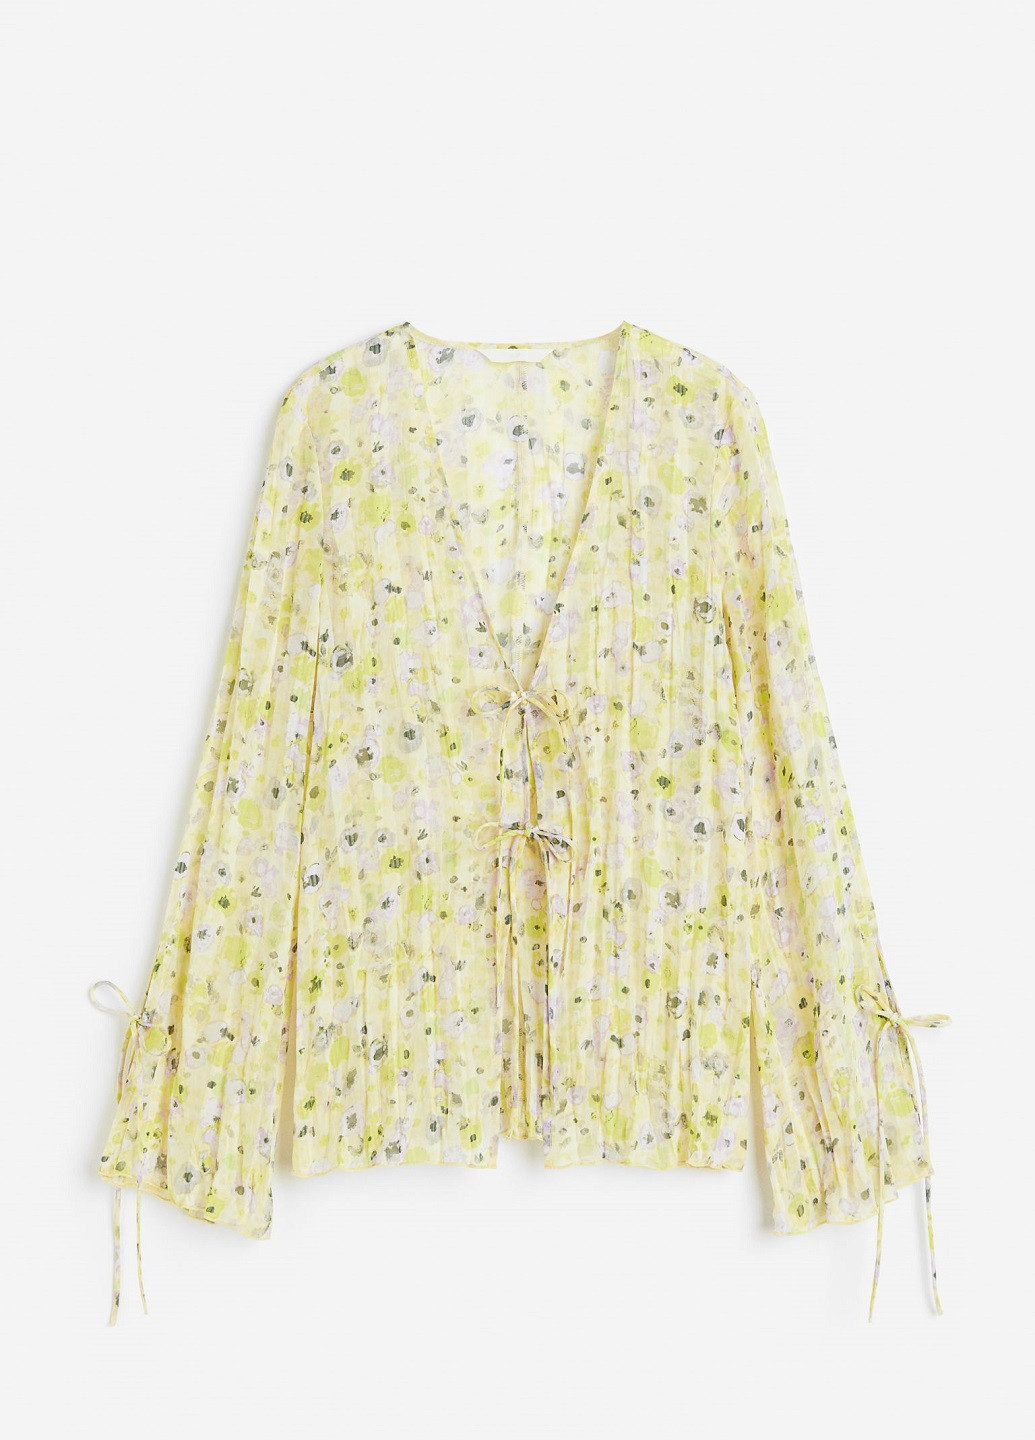 Жовта літня блузка H&M